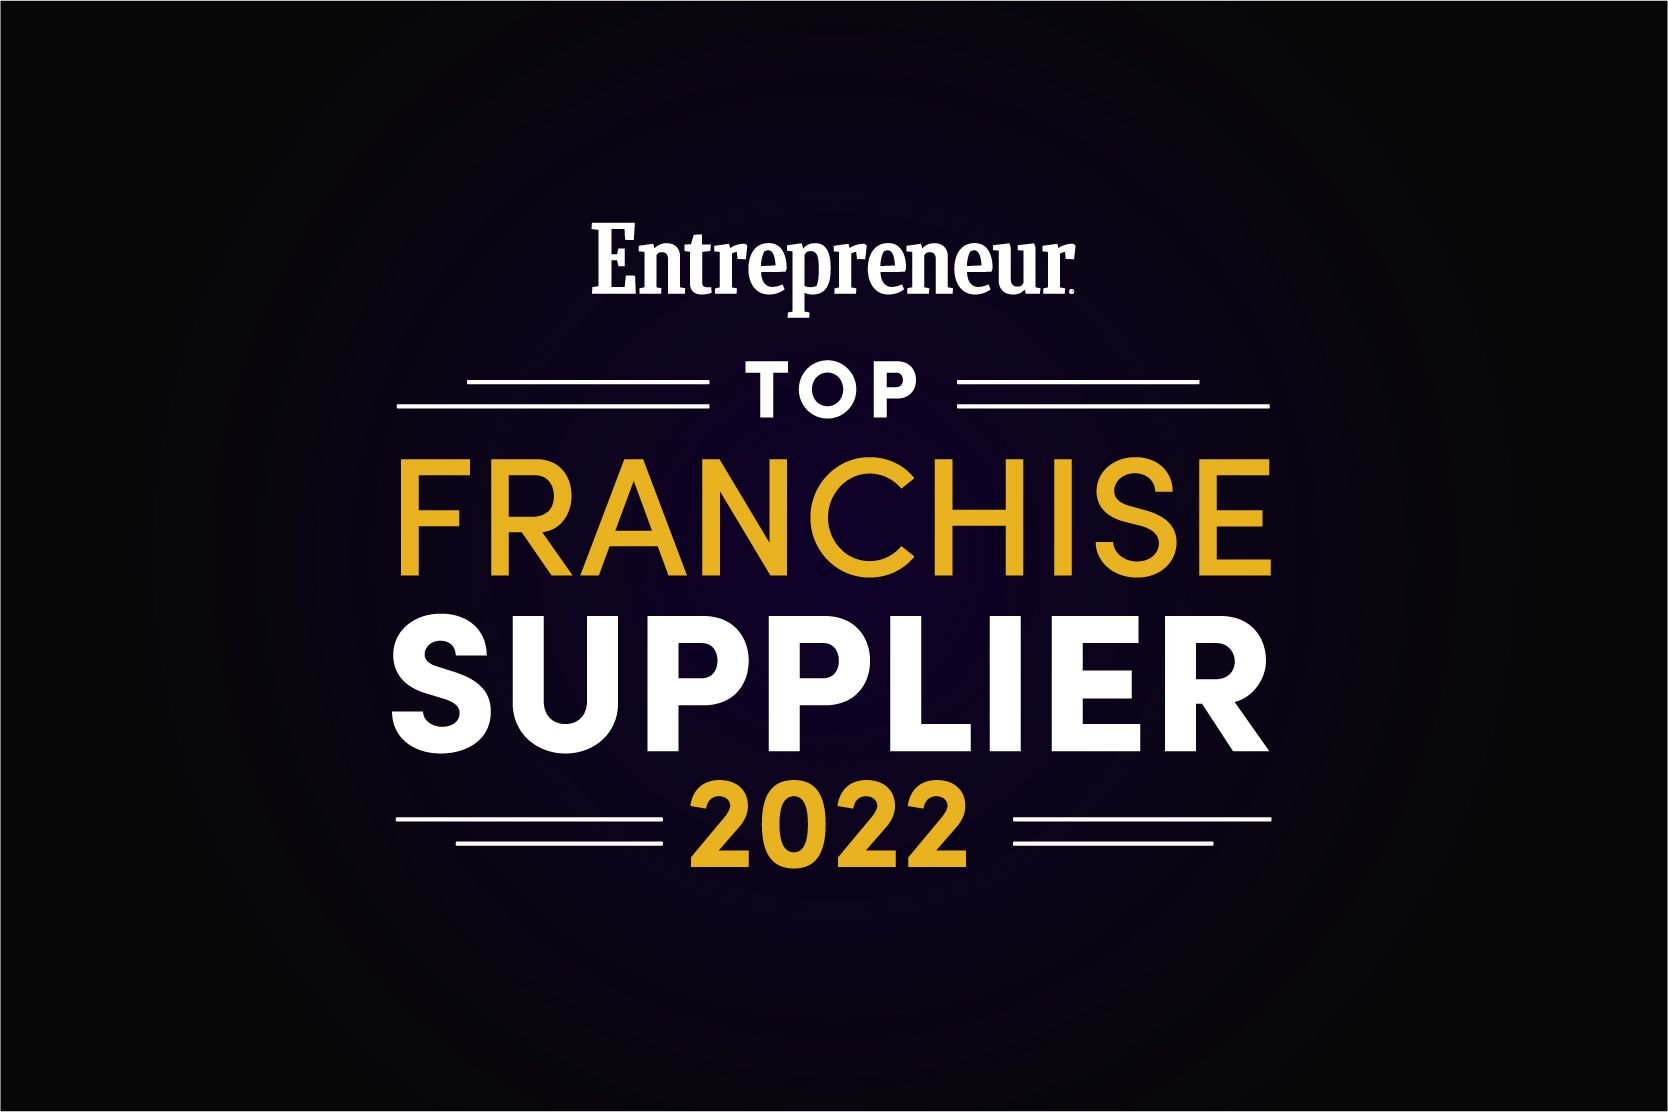 Entrepreneur Franchise Top Supplier.jpg